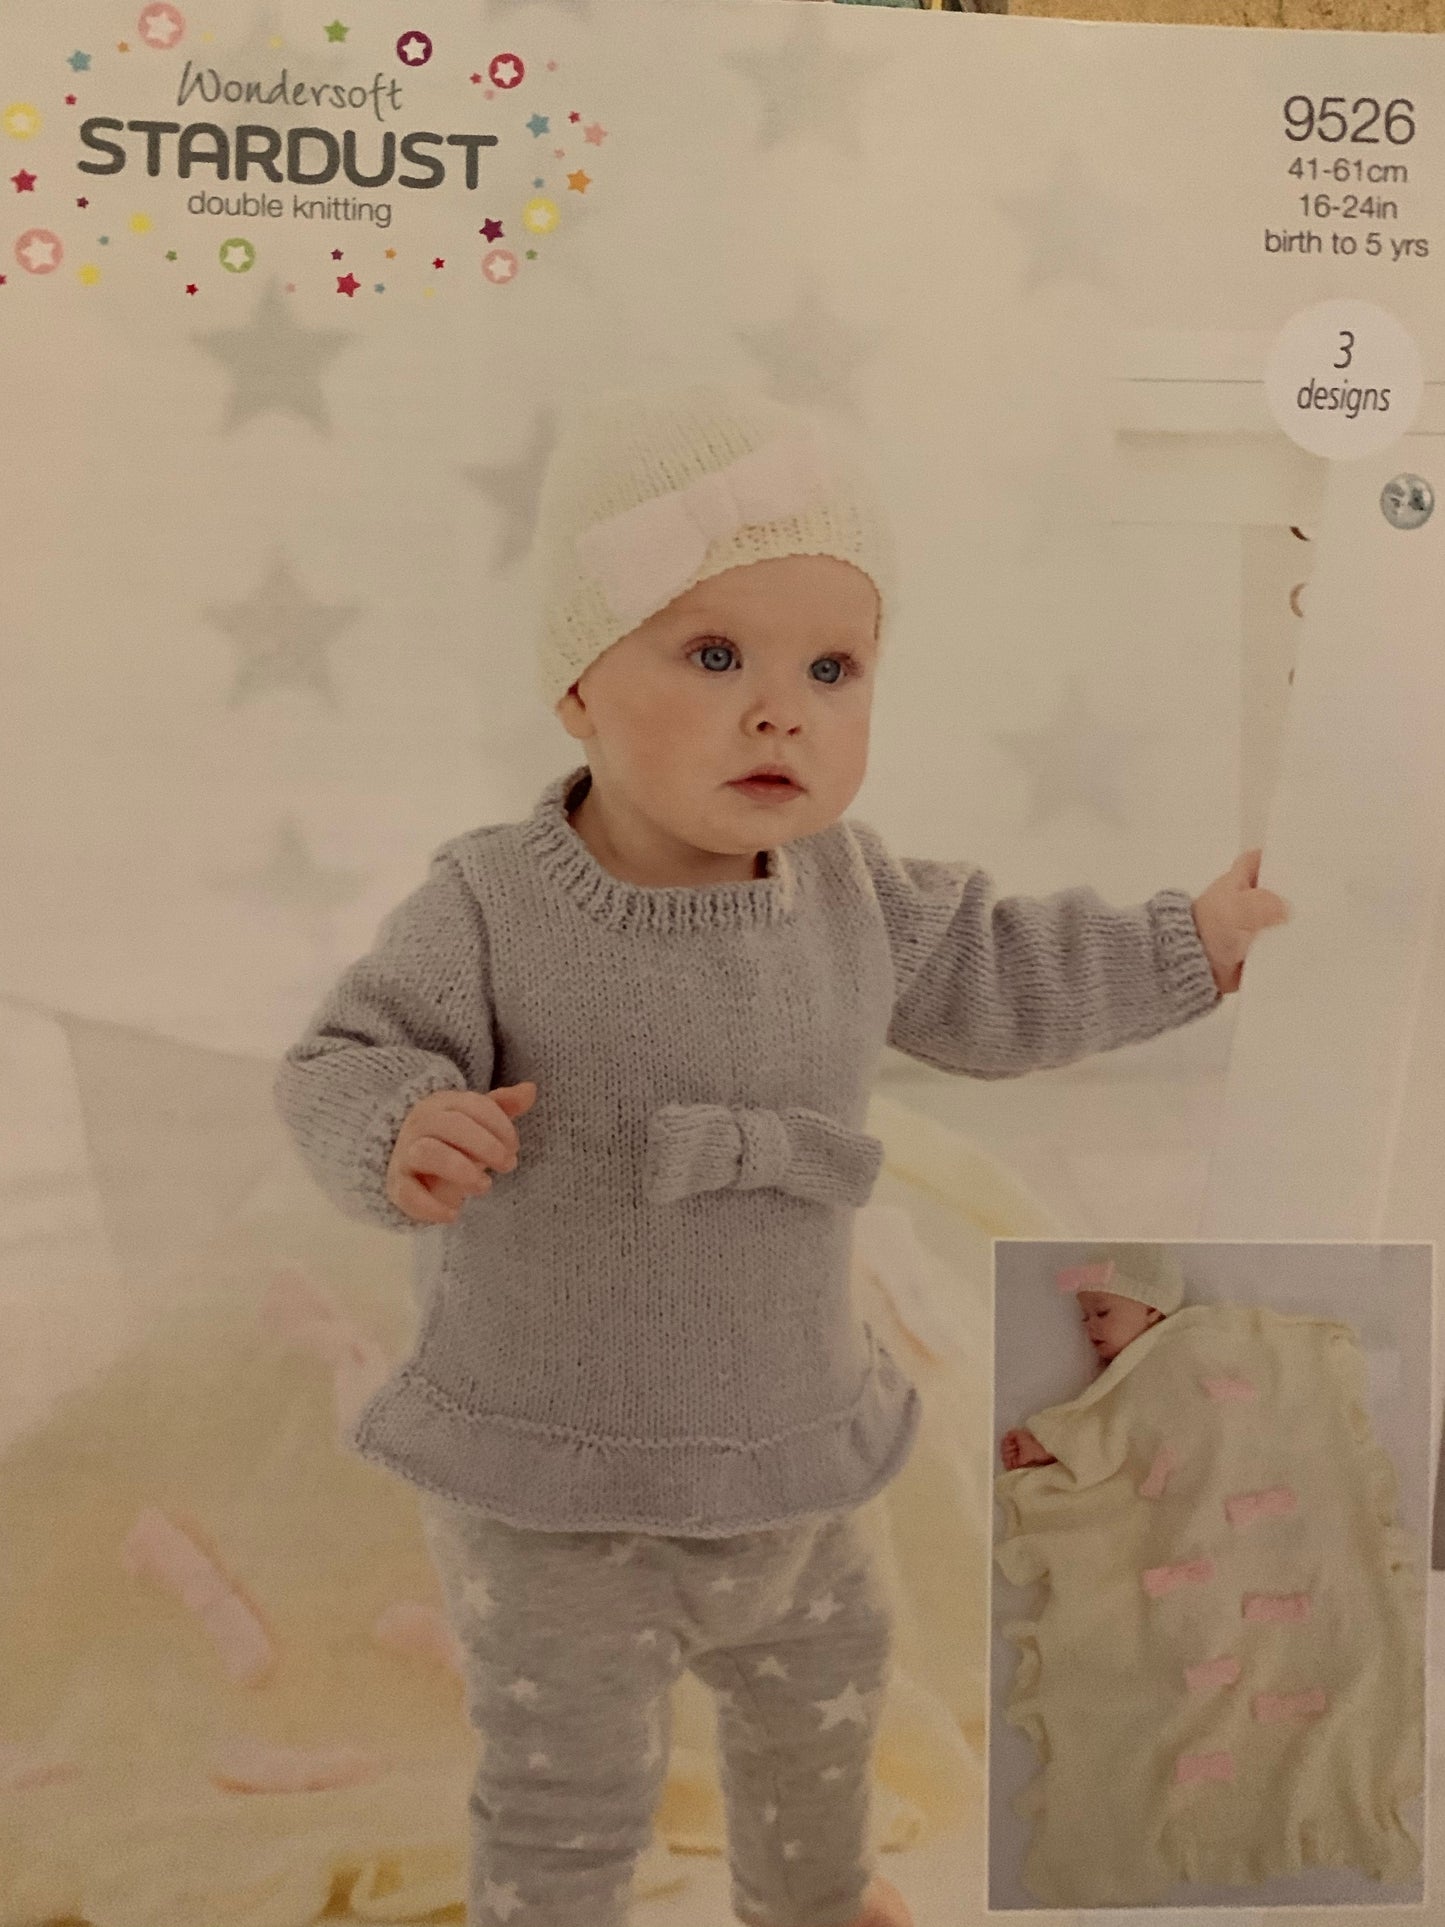 9526 Stylecraft Wondersoft Stardust dk  baby jumper, hat and blanket knitting pattern